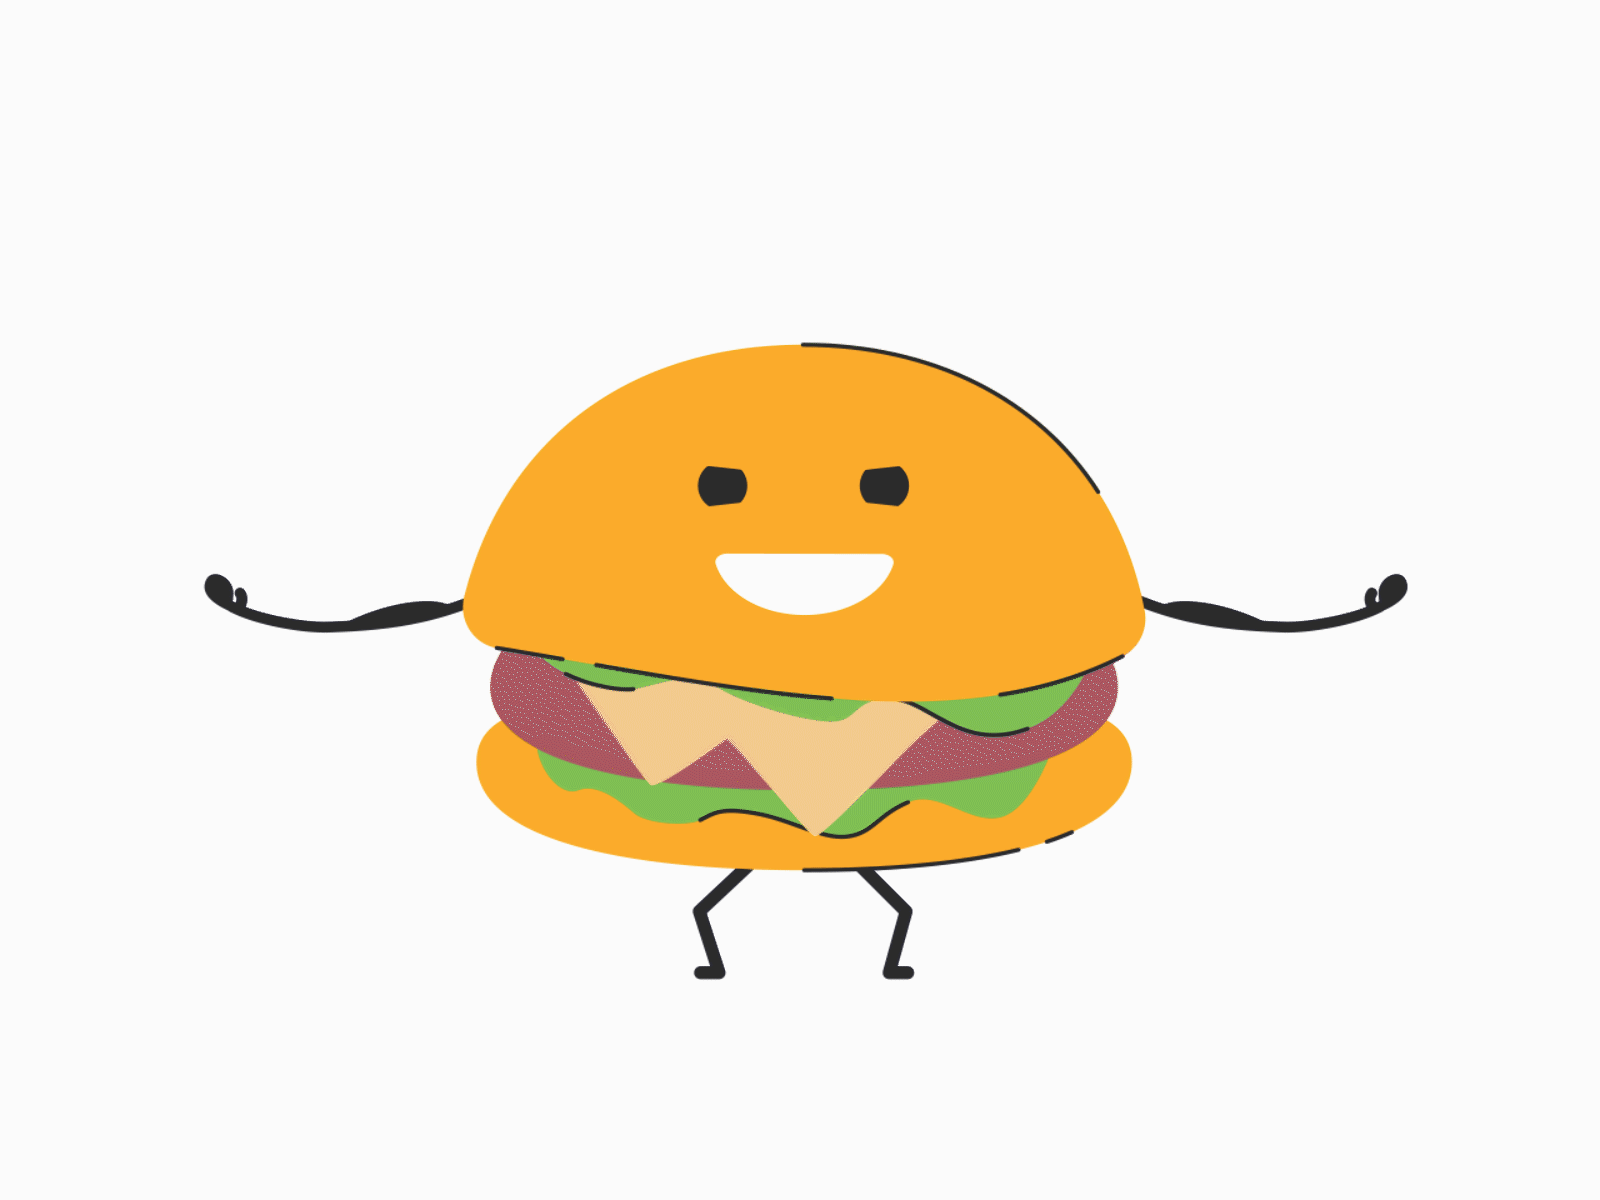 Builder Burger